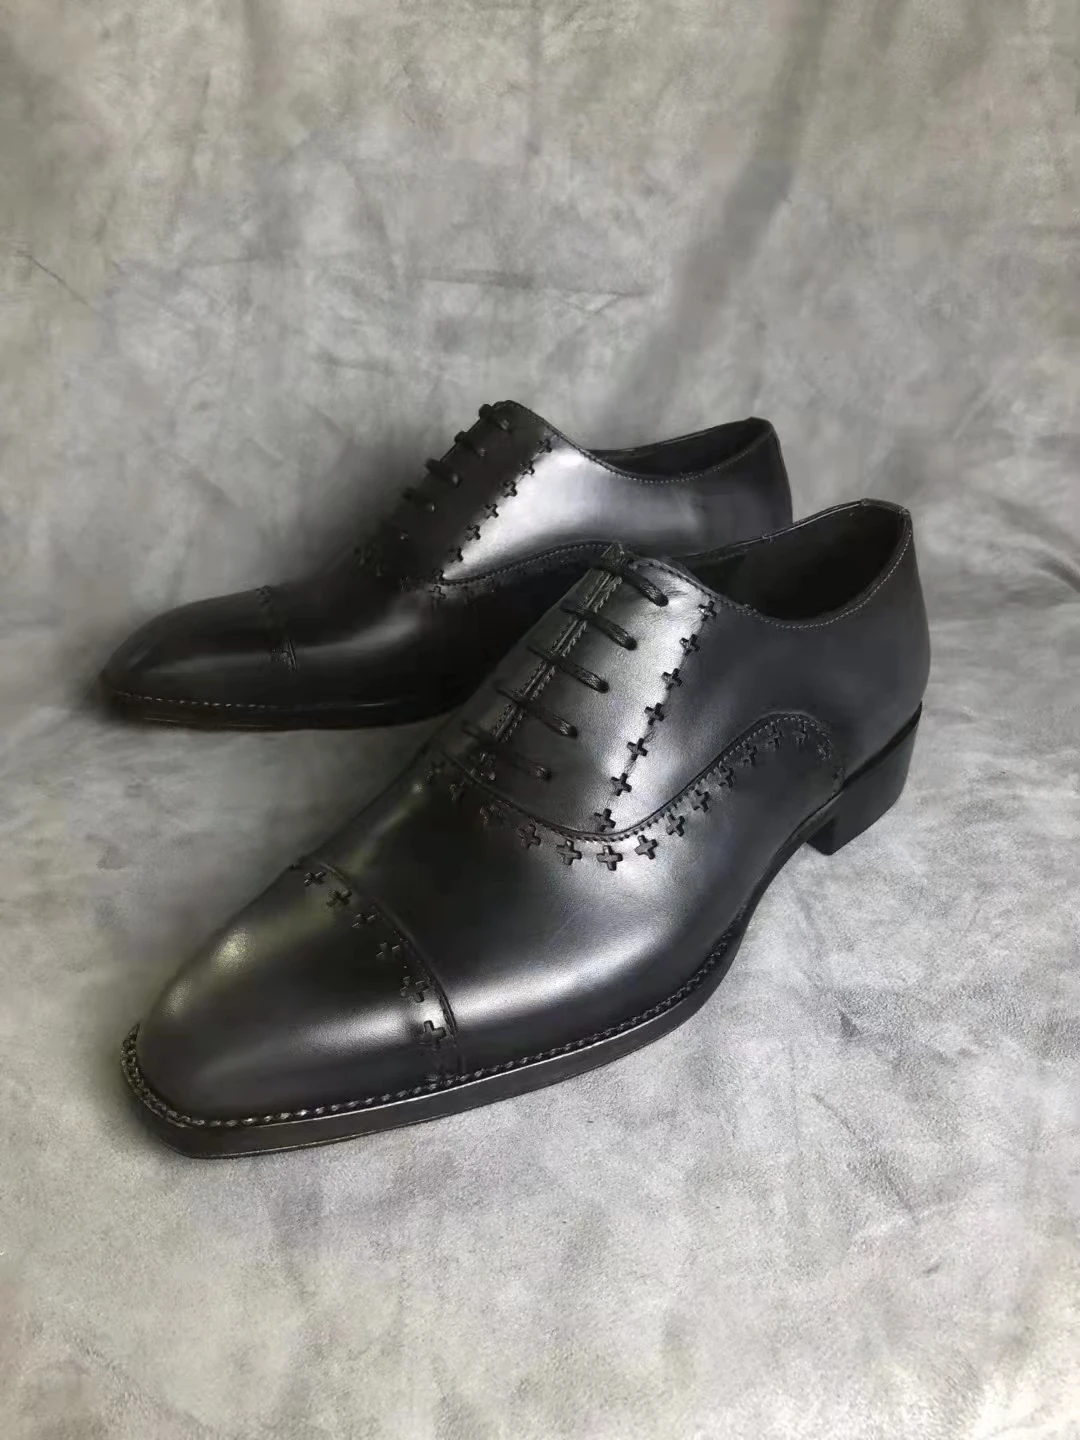 

Saint elsa sapatos masculinos de couro, sapatos clássicos de alta qualidade estilo oxford pretos de pontas